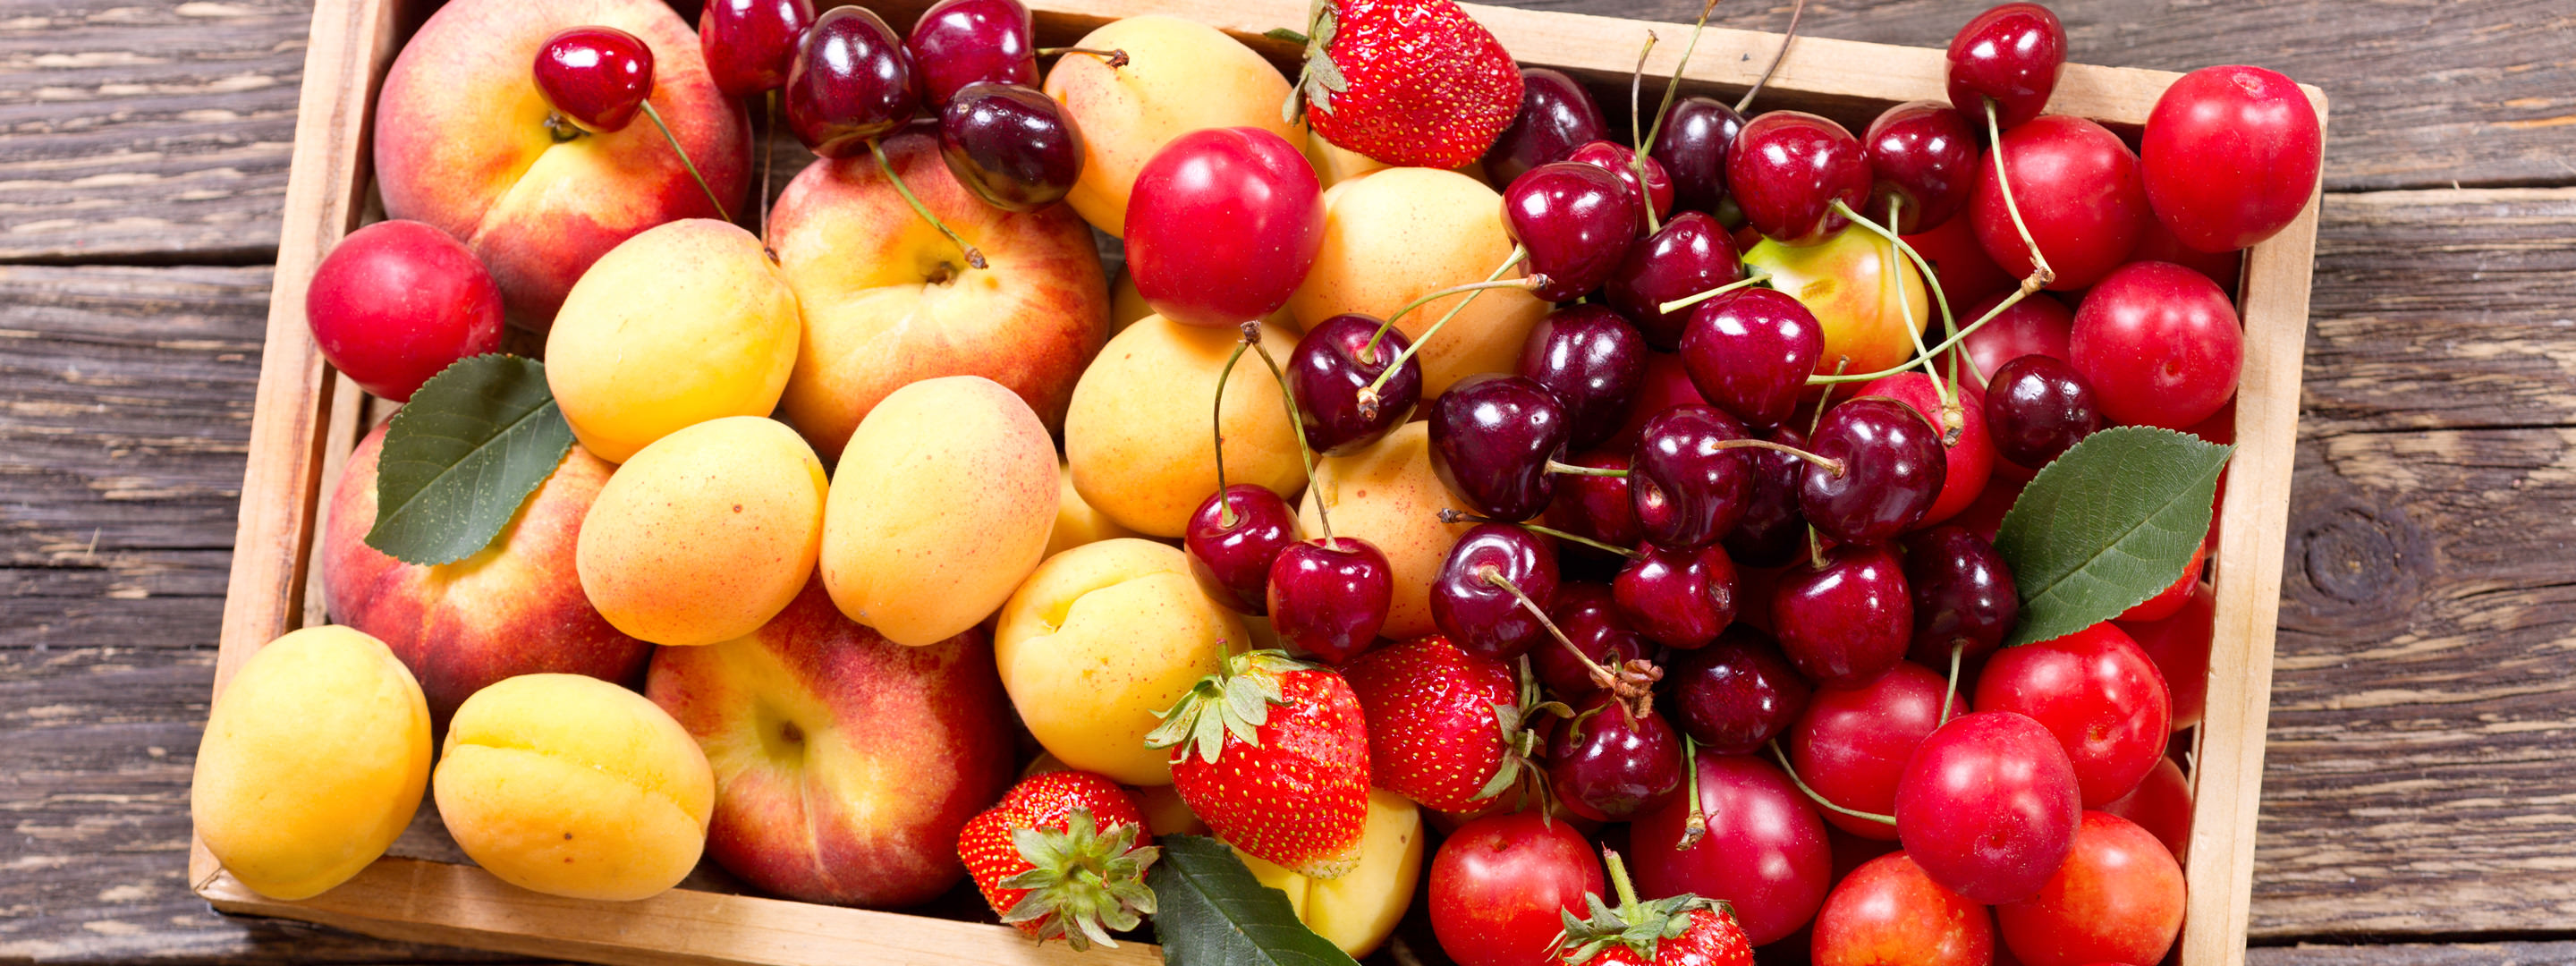 raccolto di frutta